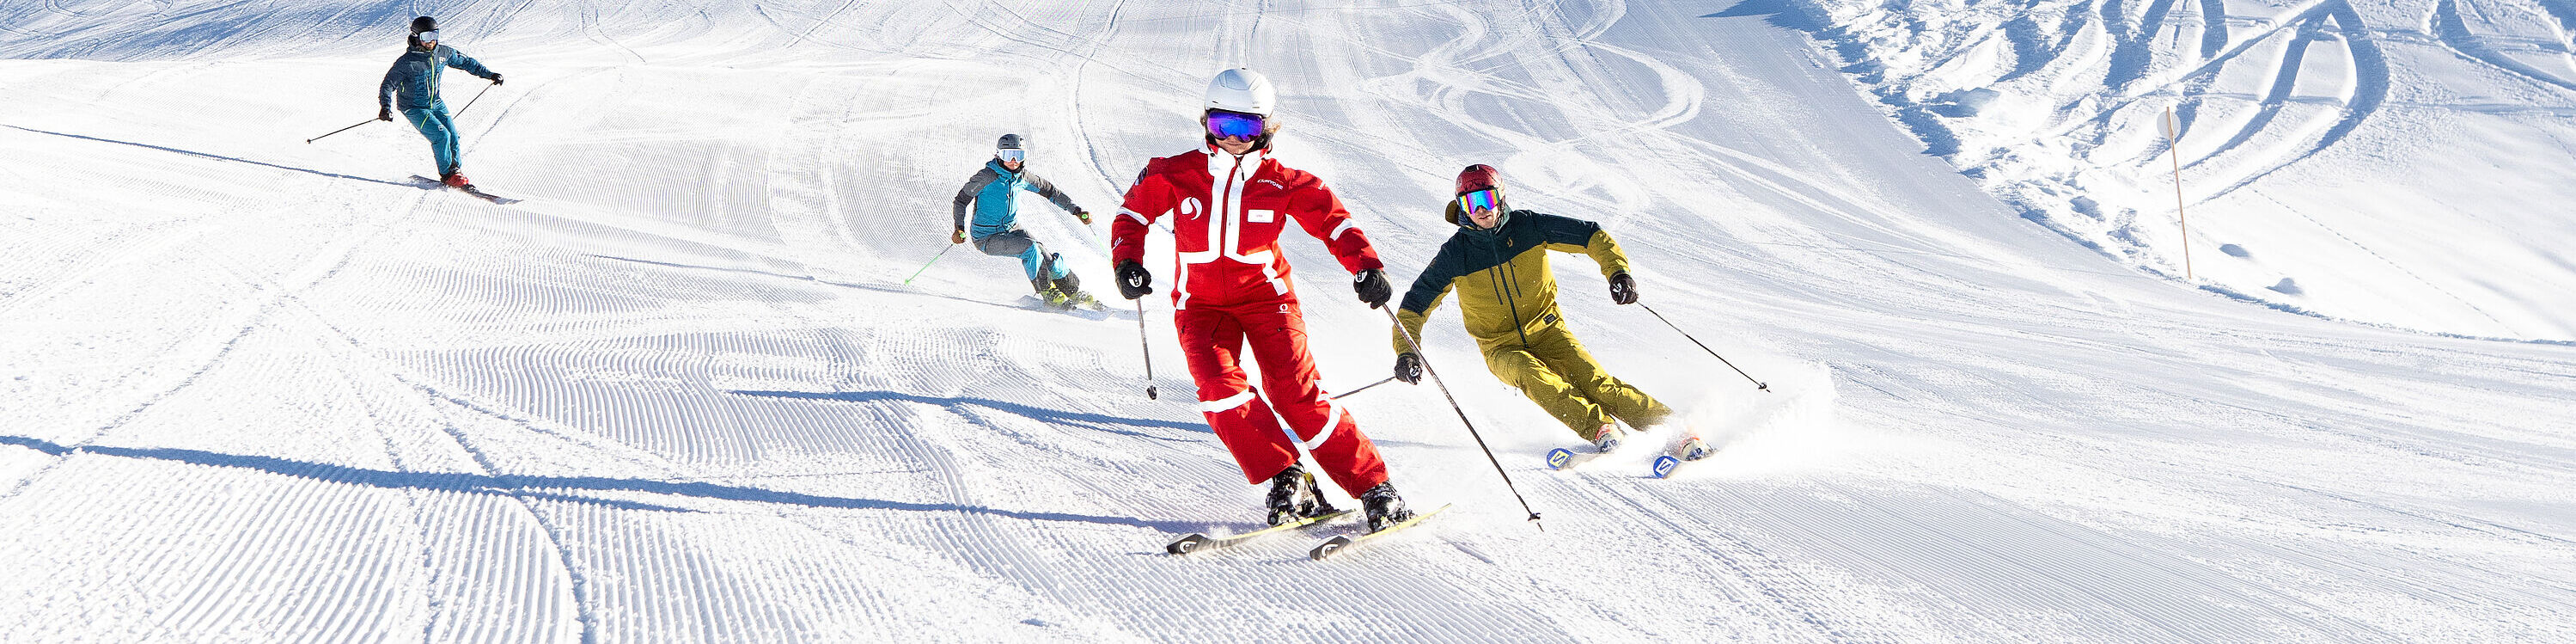 Een groep gevorderden volgt hun skileraar in soepele bochten tijdens de skicursus